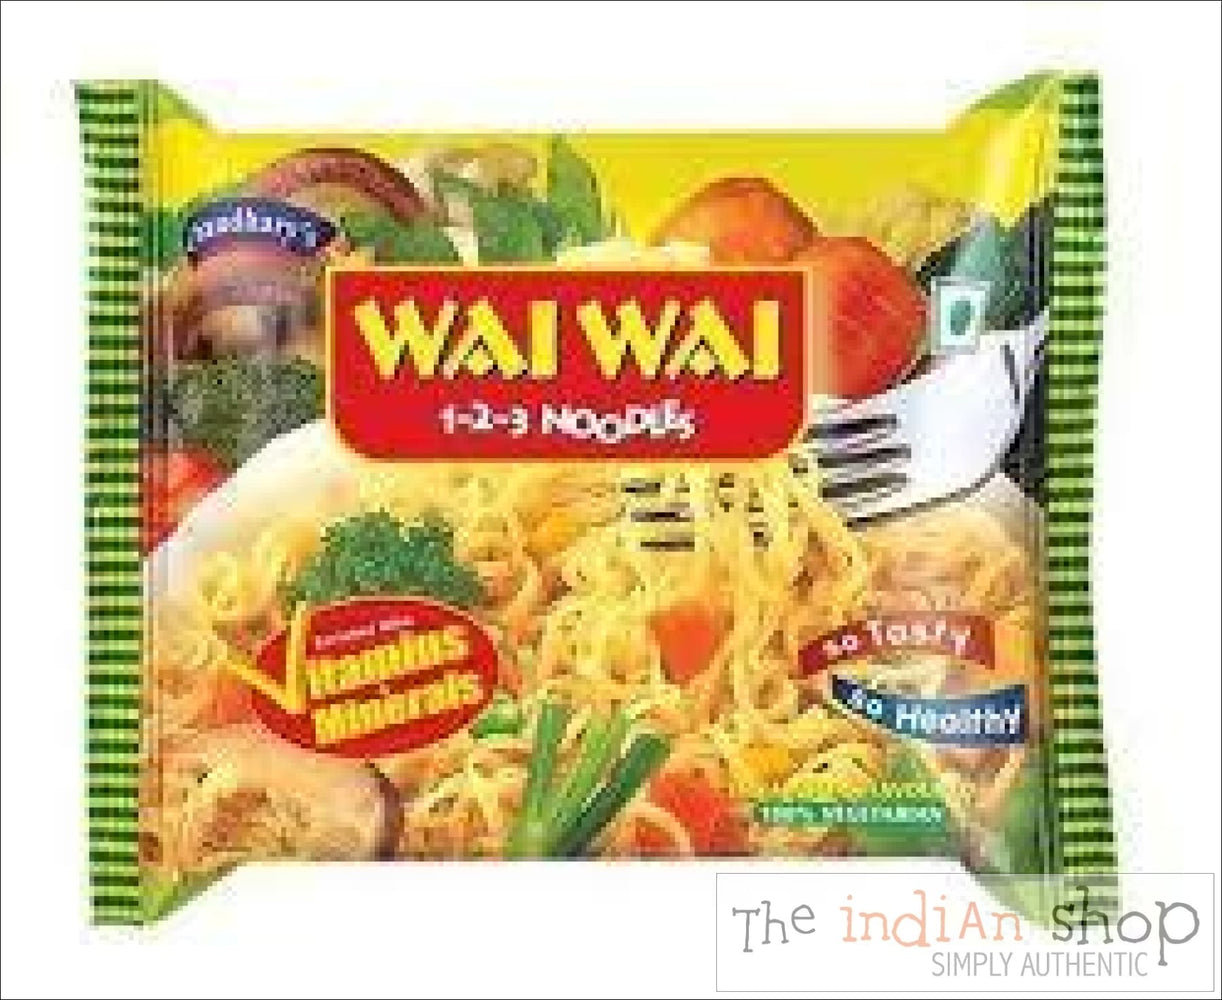 Wai Wai Veg Noodles - Snacks